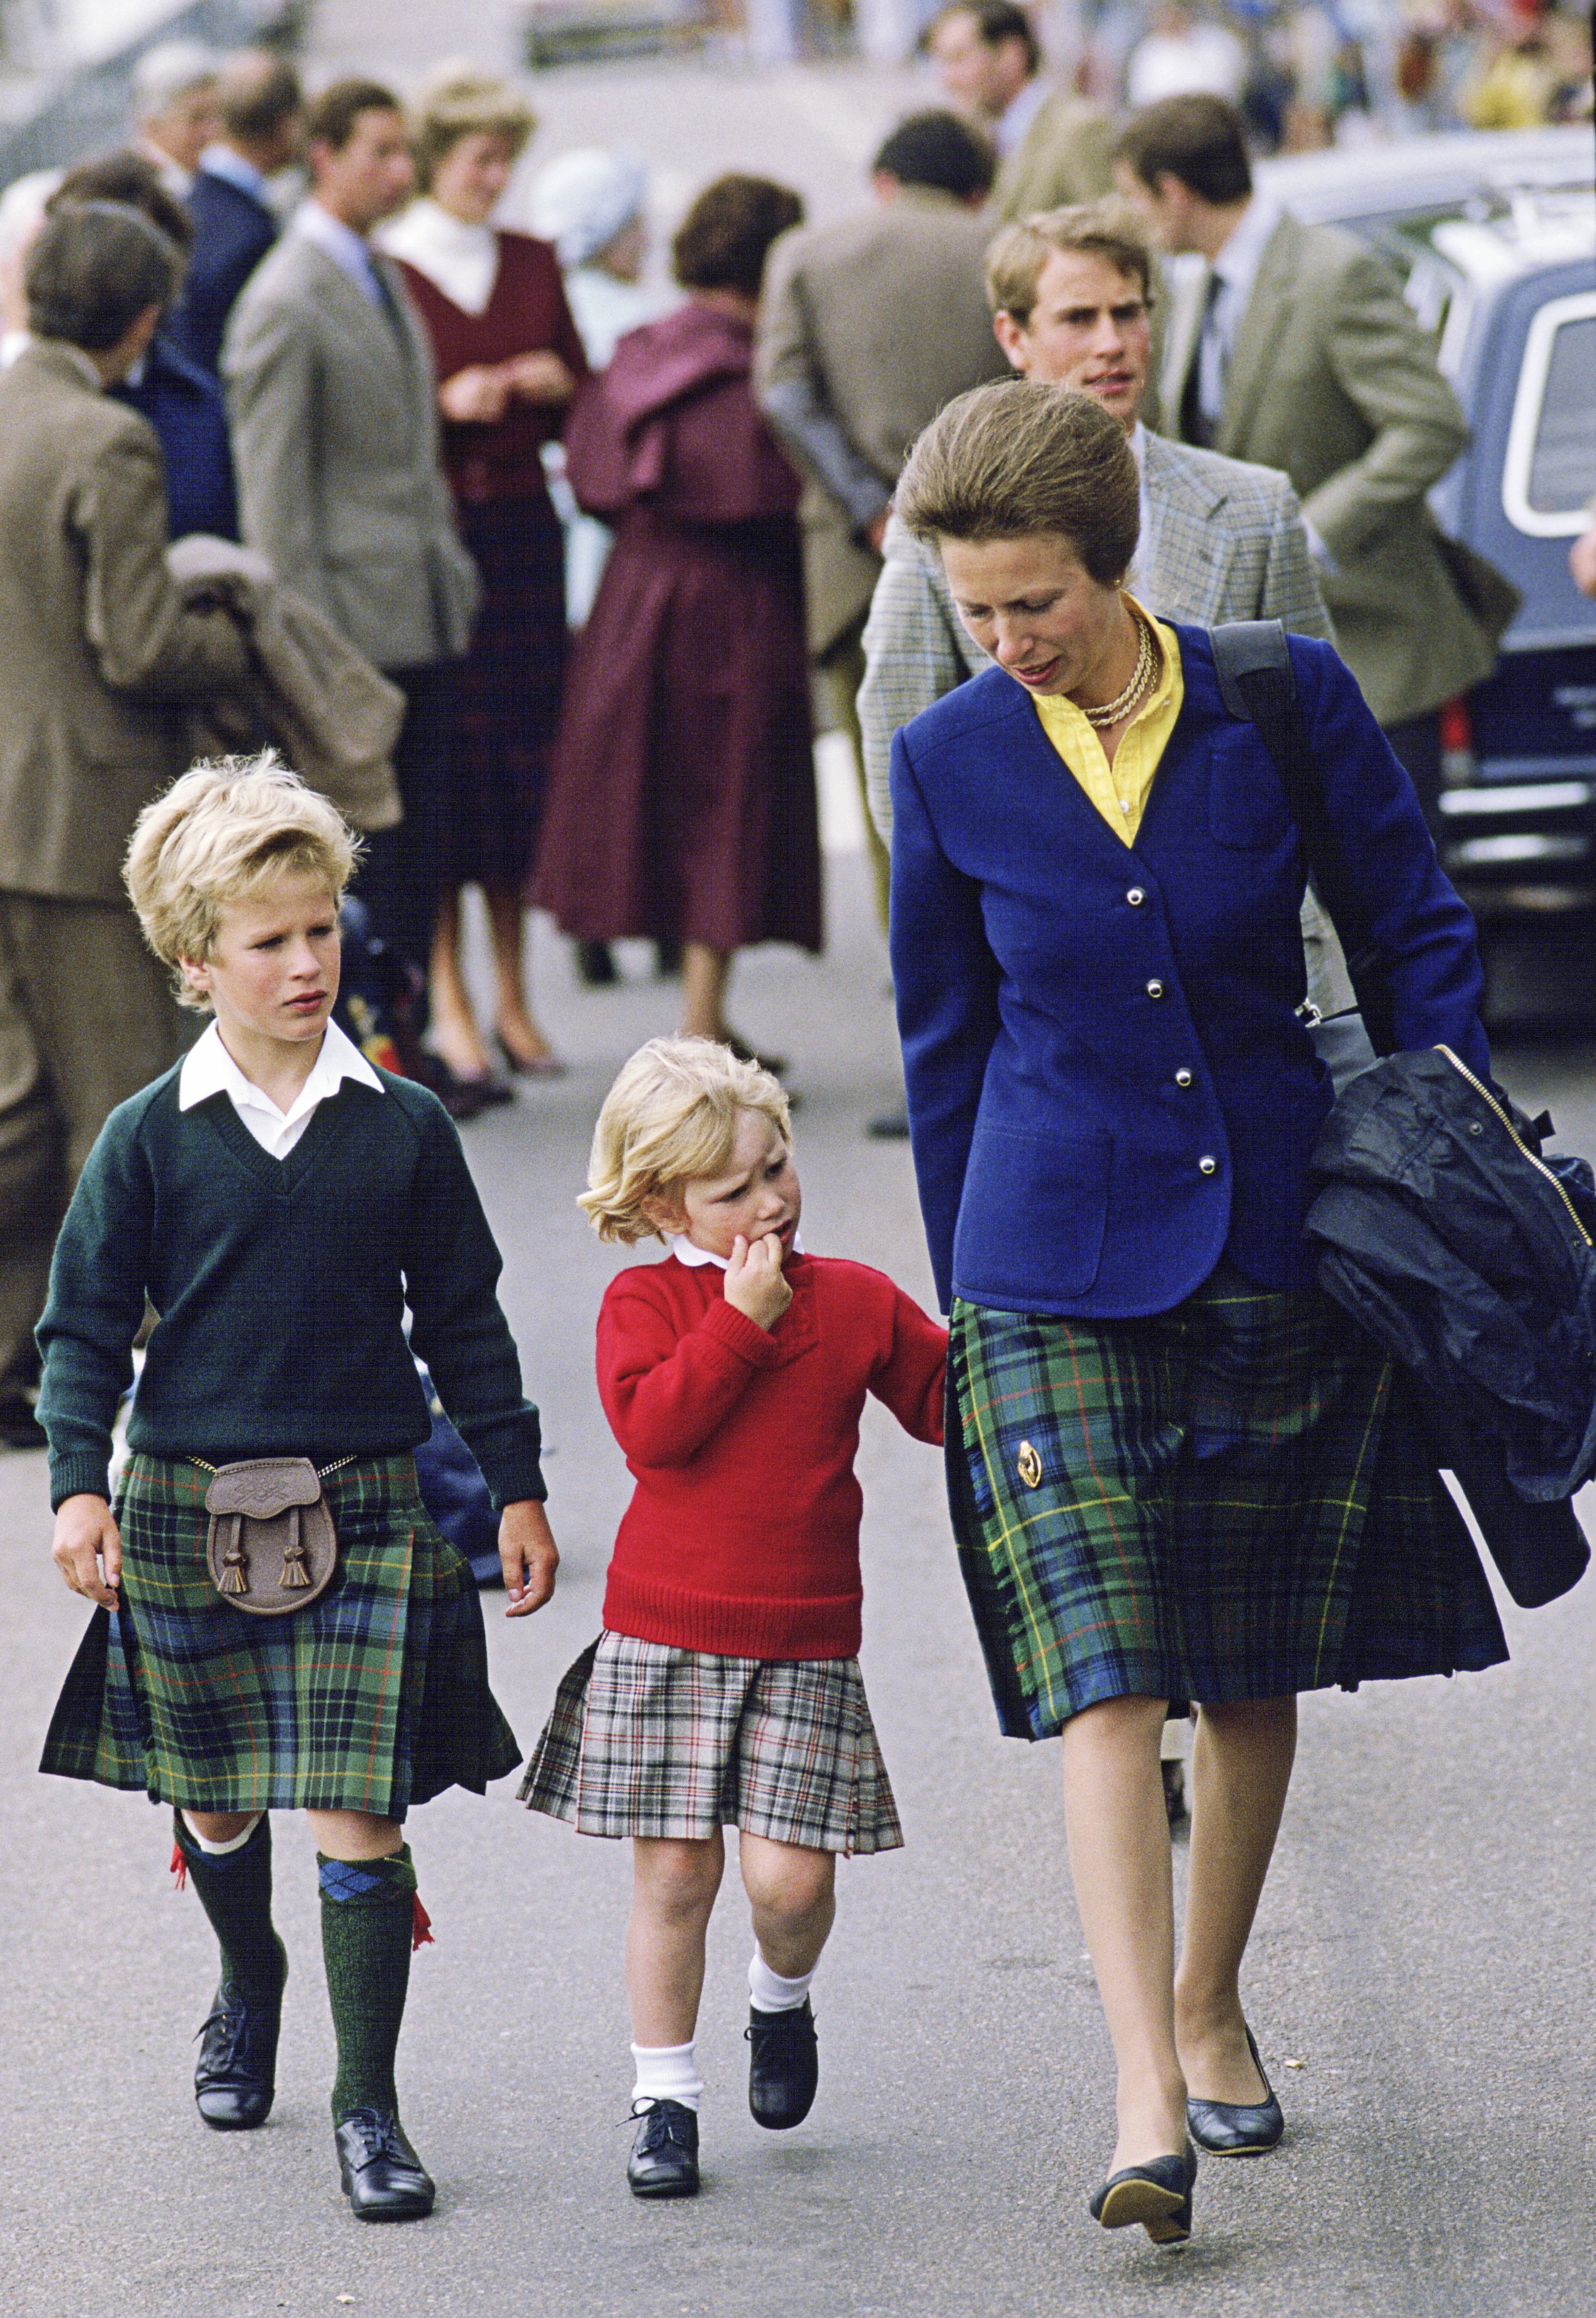 La Princesse Anne avec ses enfants Zara et Peter Phillips. | Source : Getty Images